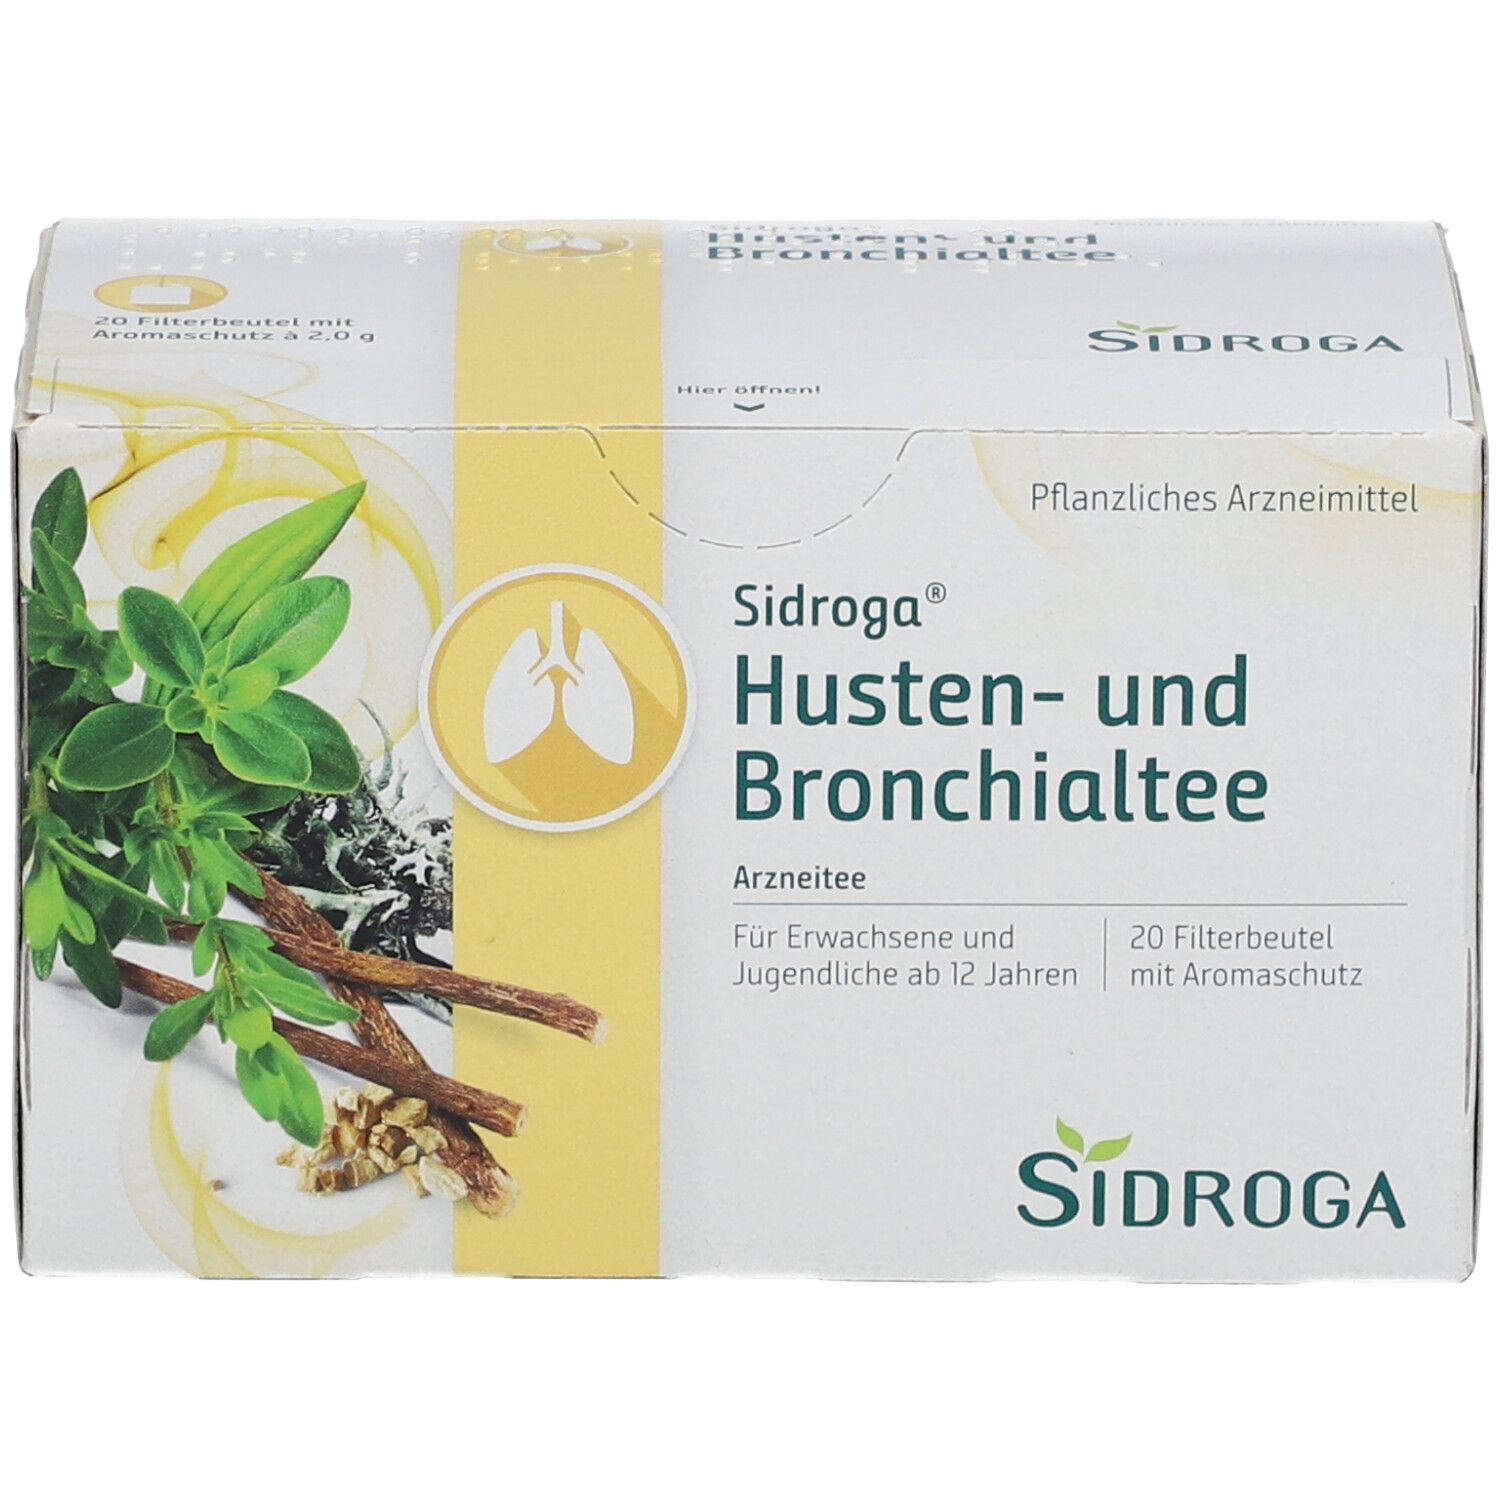 Sidroga® Husten- und Bronchialtee